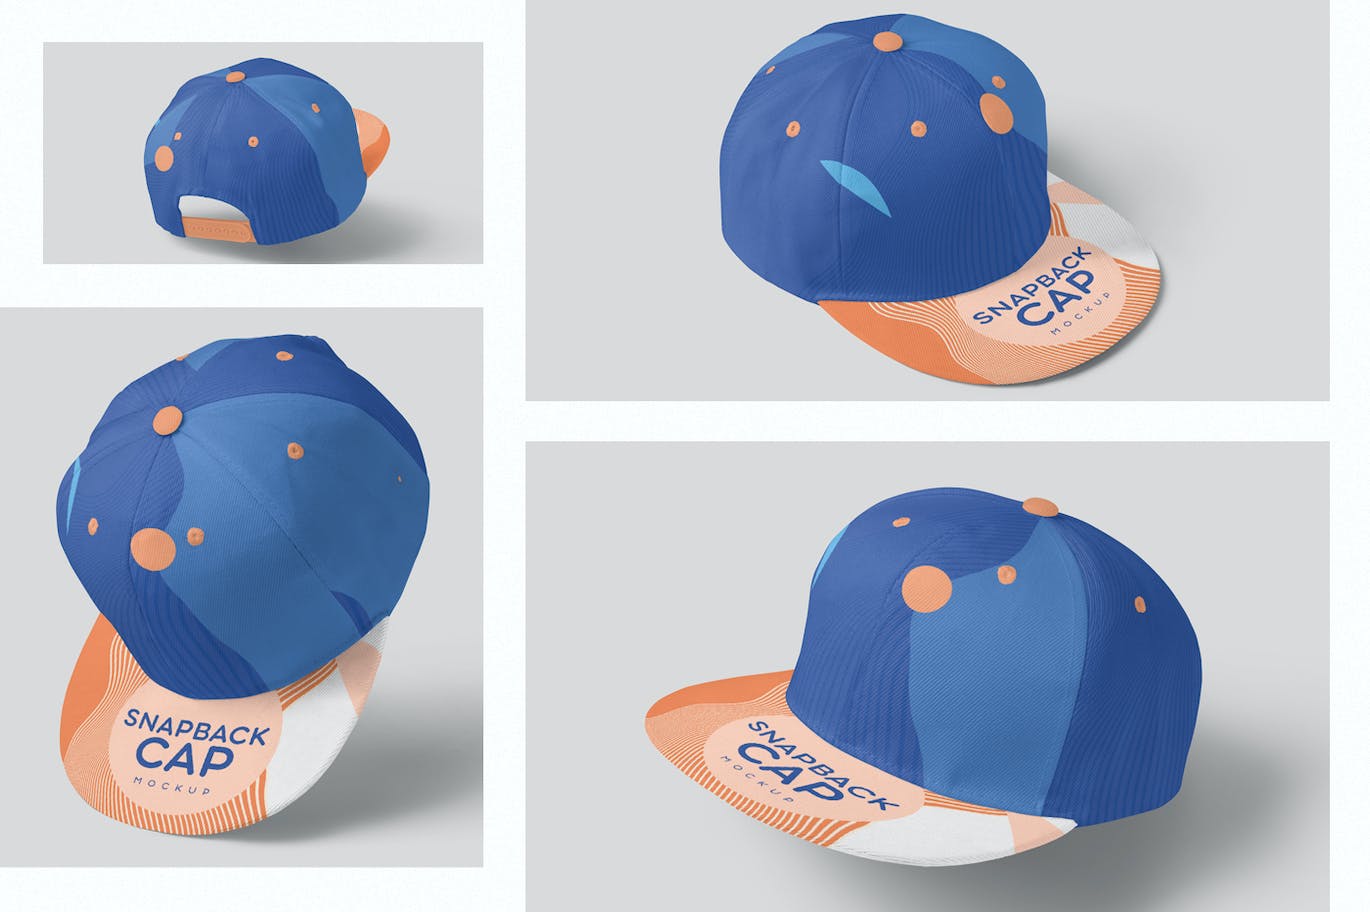 棒球帽运动品牌设计样机 Snapback Cap Mockups 样机素材 第1张